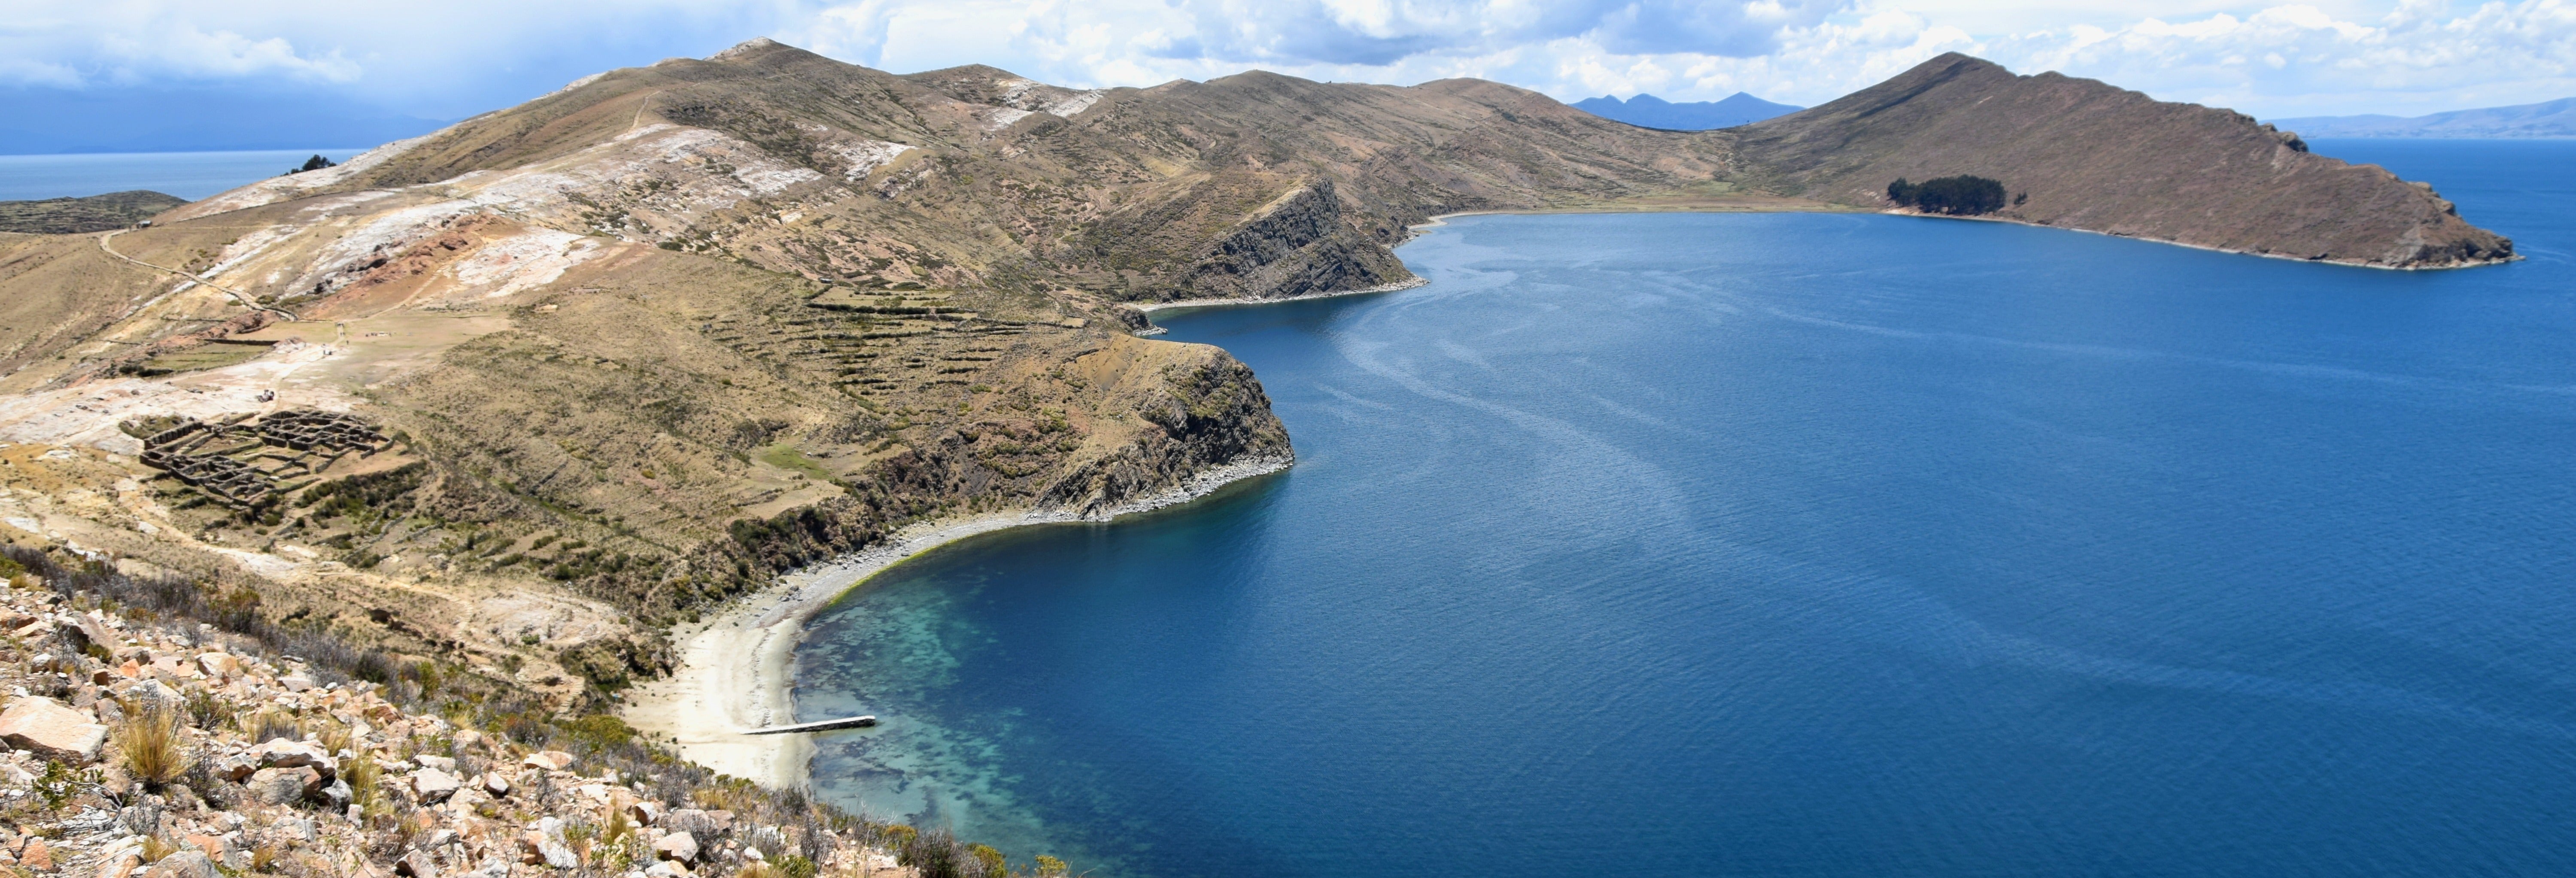 Excursão ao Lago Titicaca e à Ilha da Lua